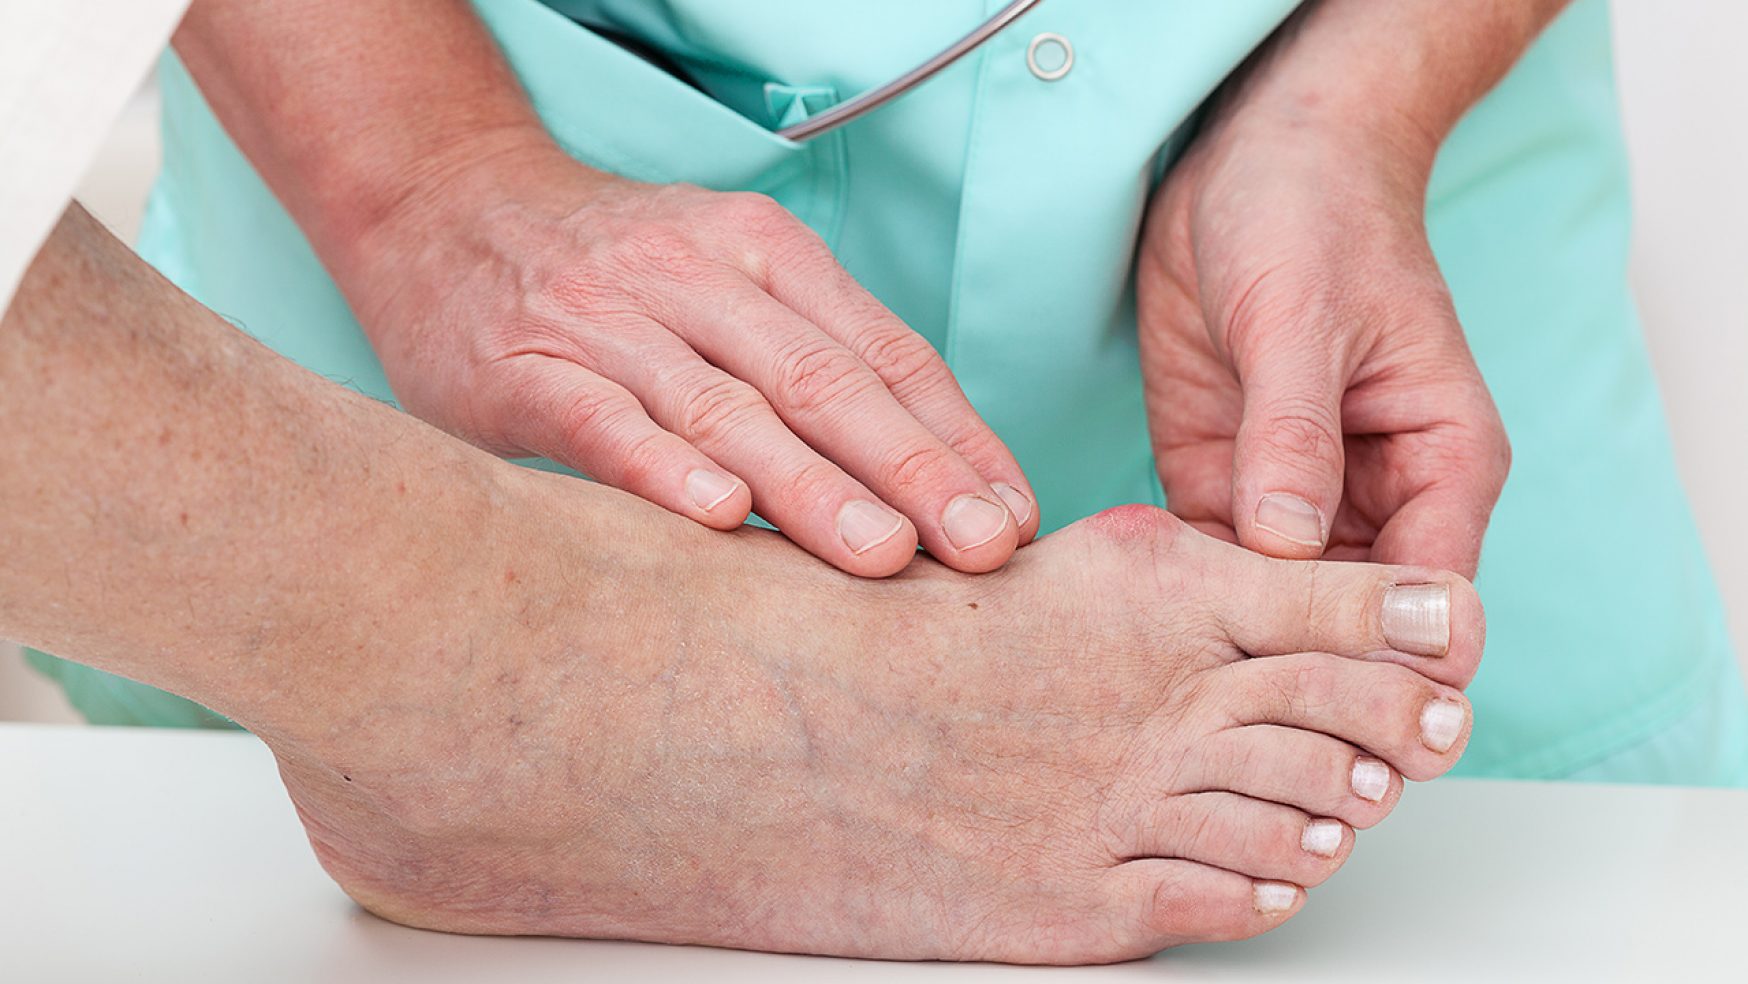 Estudio demuestra éxito en tratamiento para ulceras diabéticas en los pies